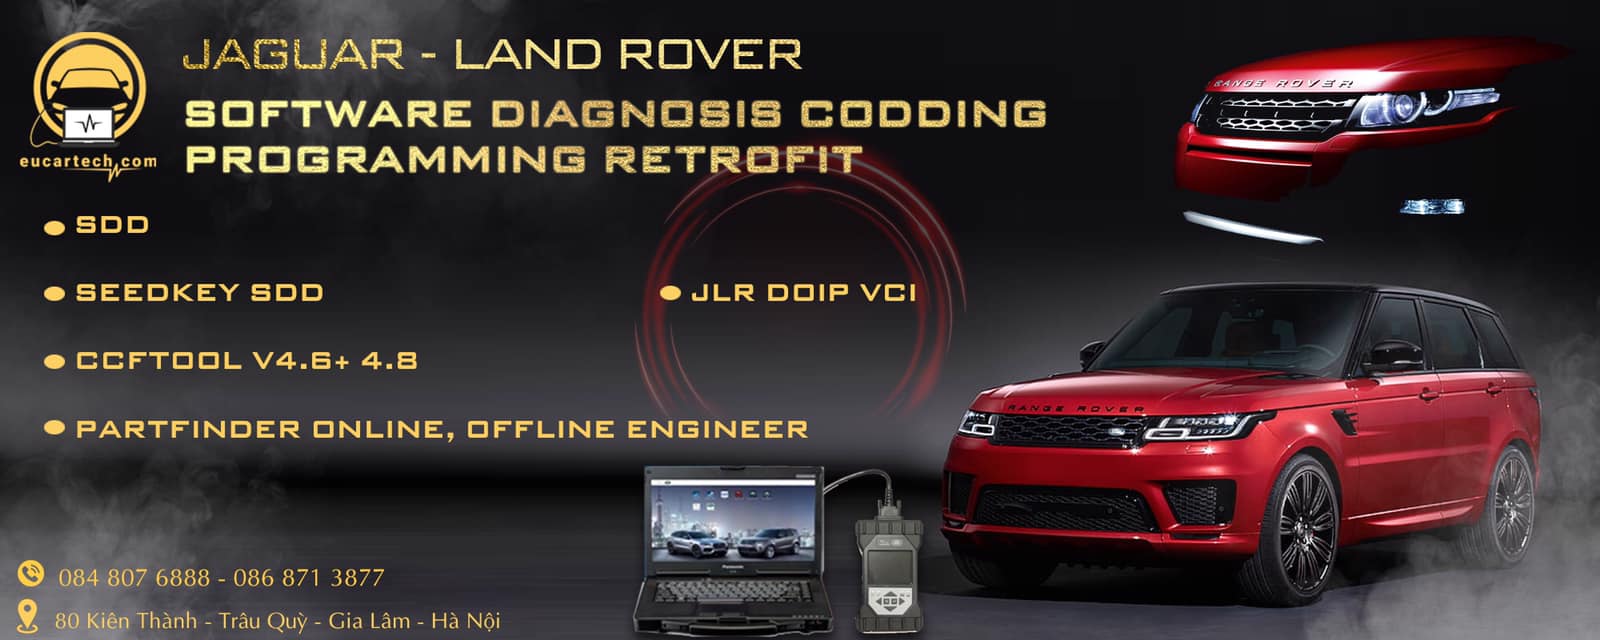 Eucartech - Chuyên về phần mềm và thiết bịCông cụ chẩn đoán, lập trình Jaguar Land Rover